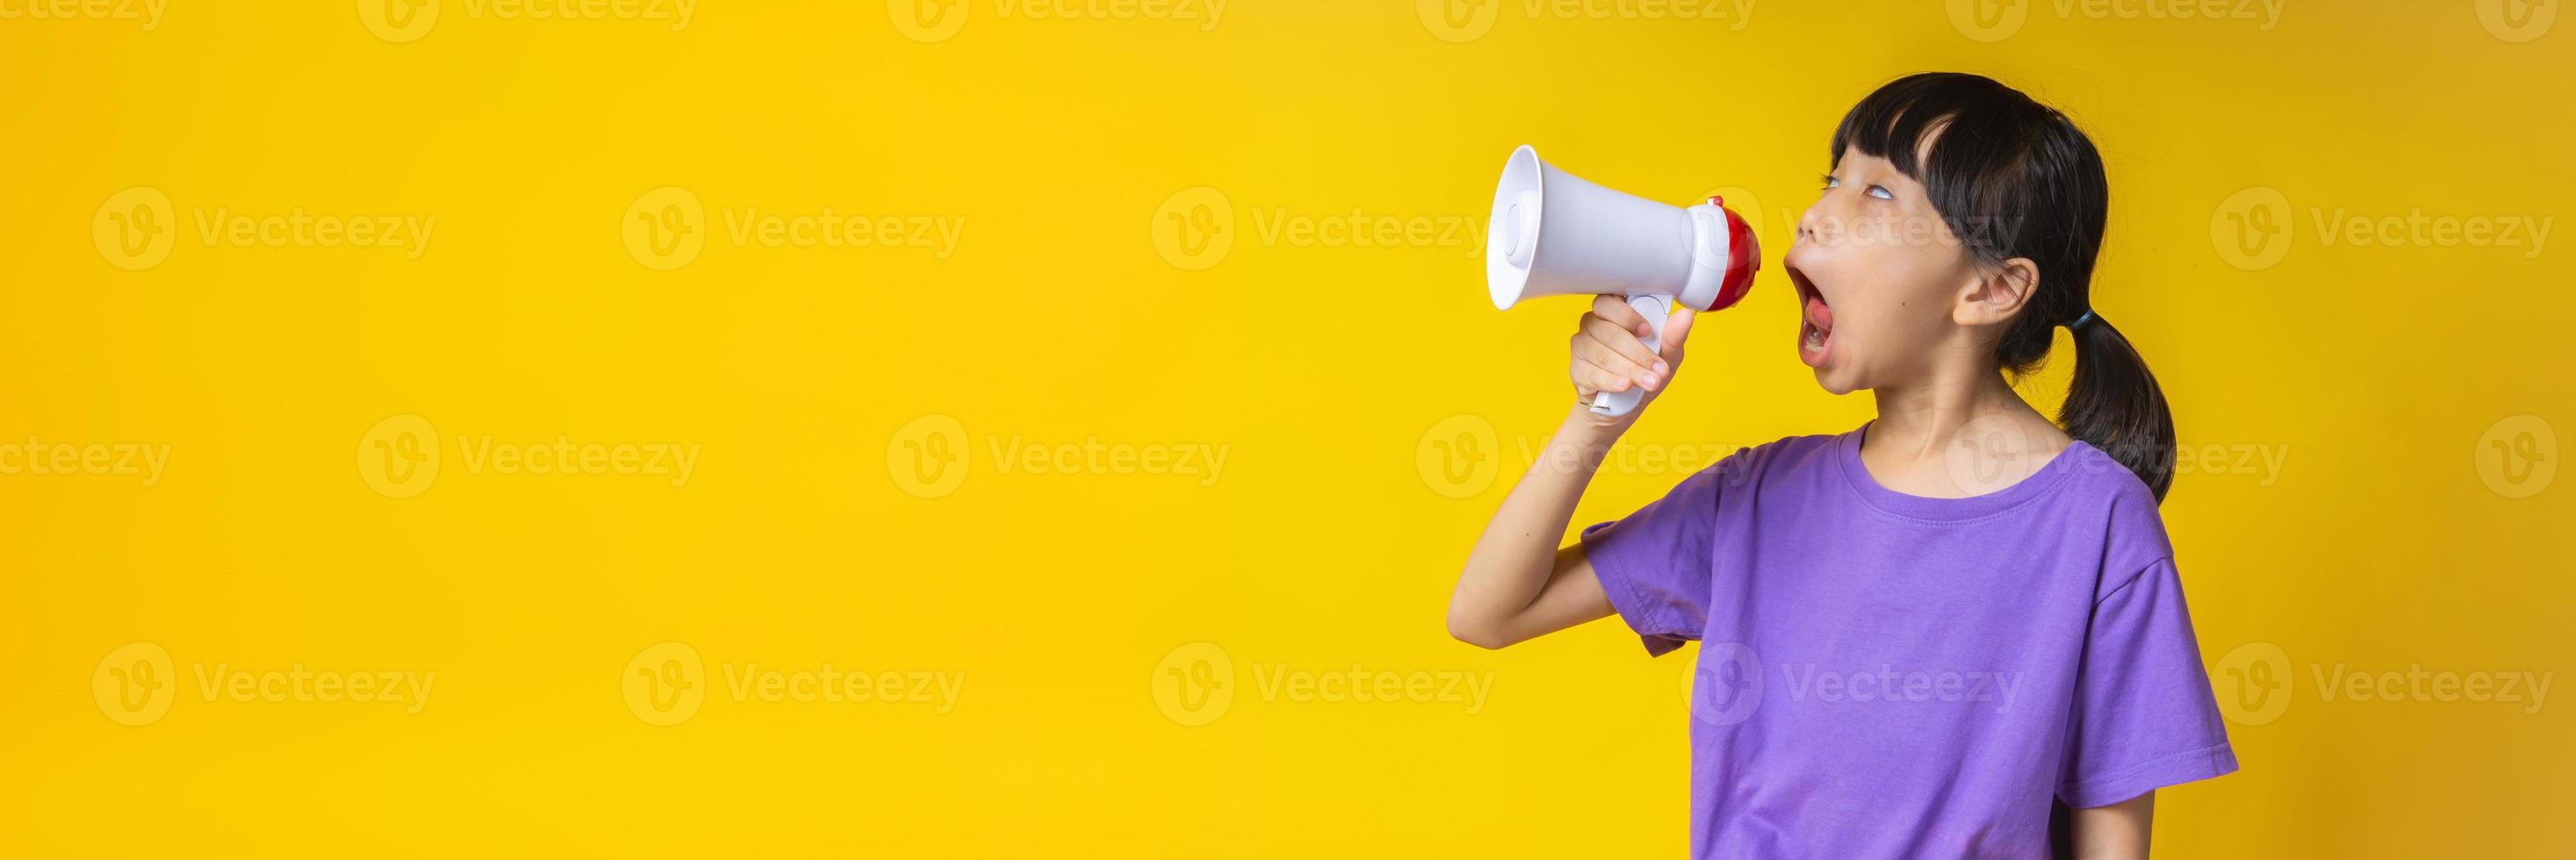 ung asiatisk tjej i lila skjorta som skriker in i vit megafon i studio med gul bakgrund foto